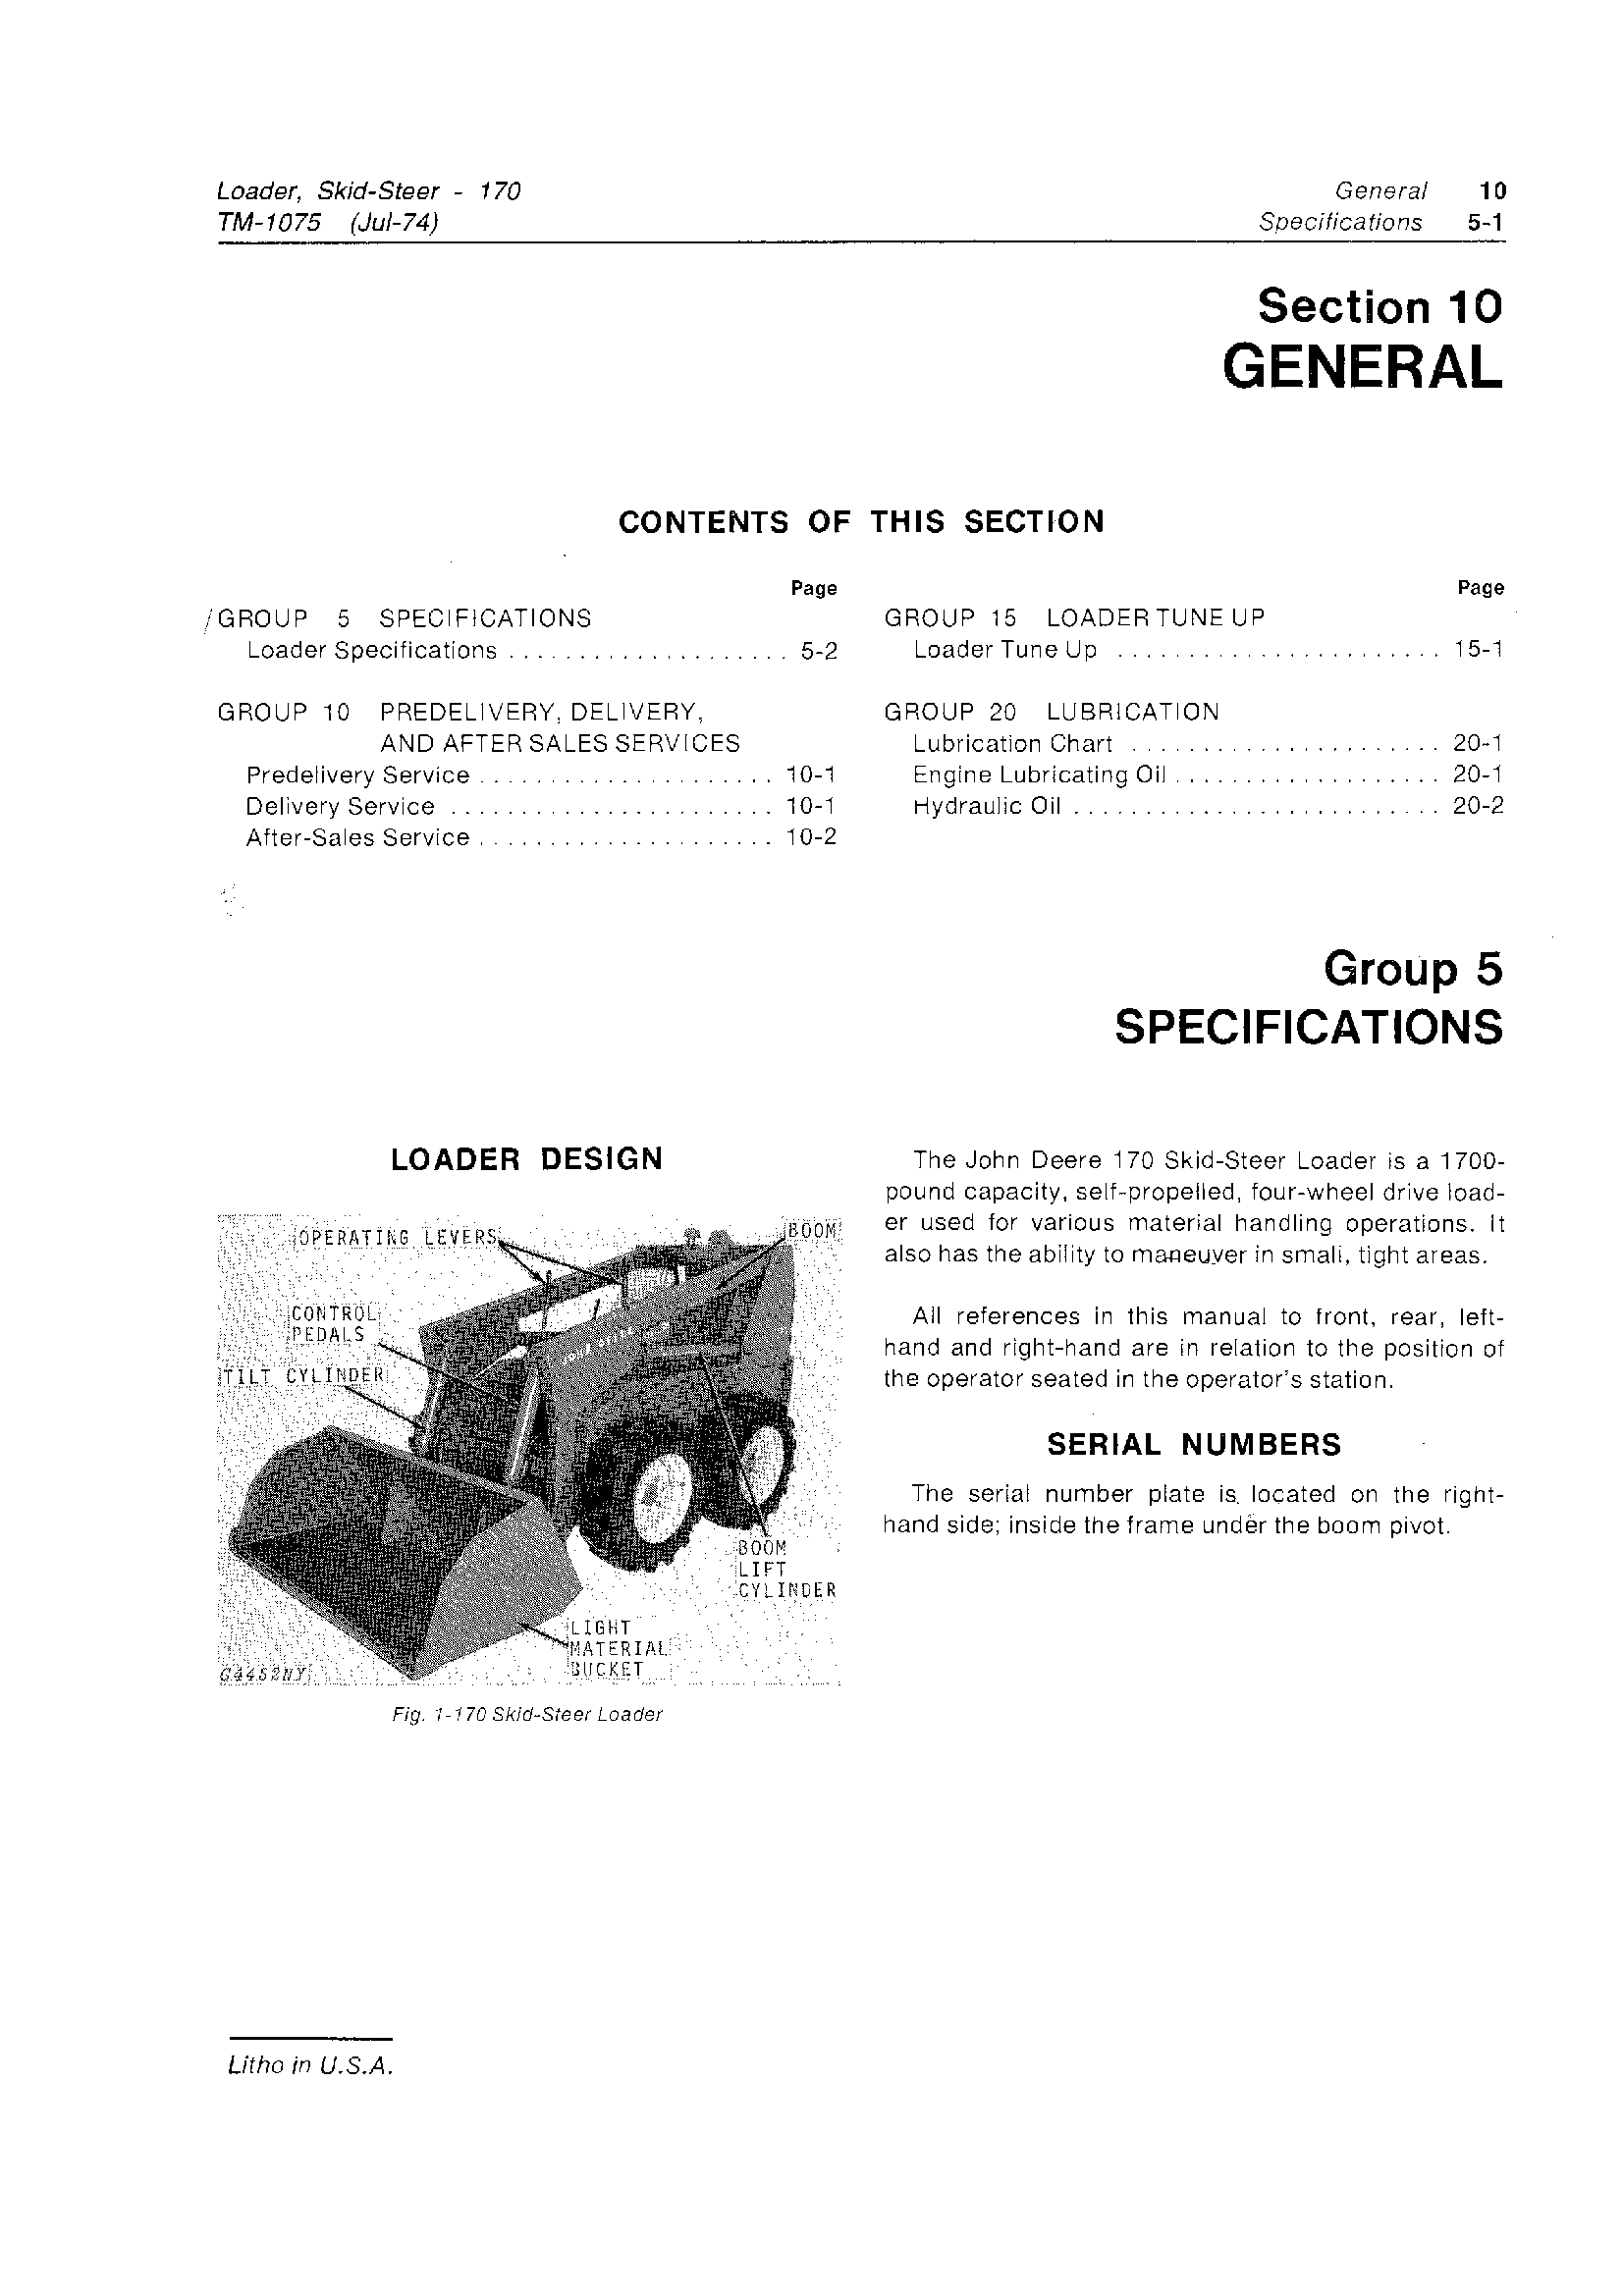 John Deere 170 manual pdf